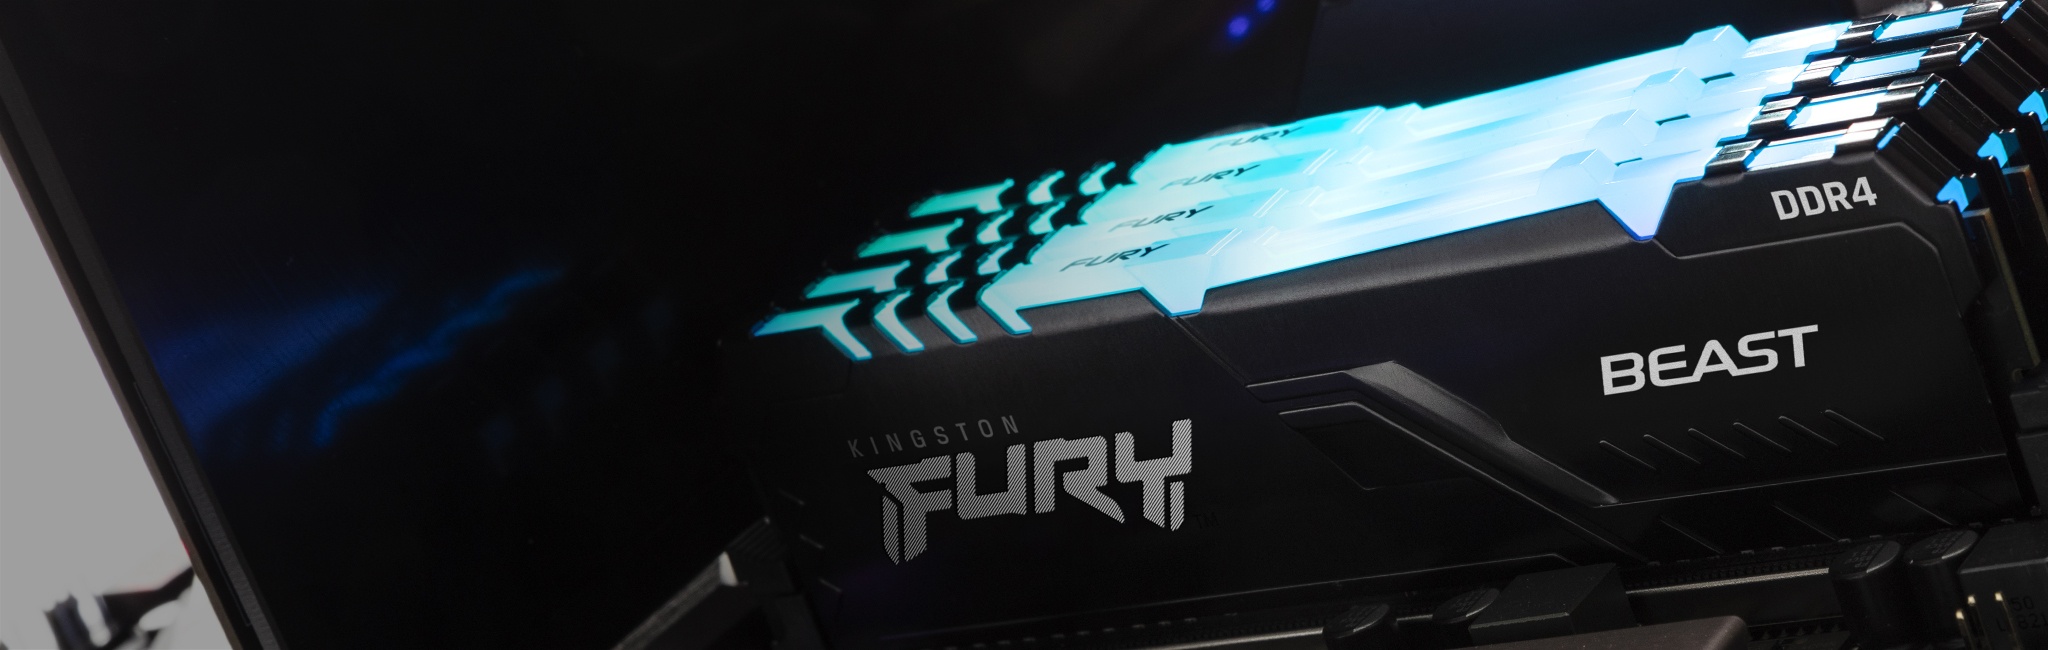 Pamięć Kingston FURY Beast RGB zainstalowana w komputerze z niebieską poświatą na górze modułu